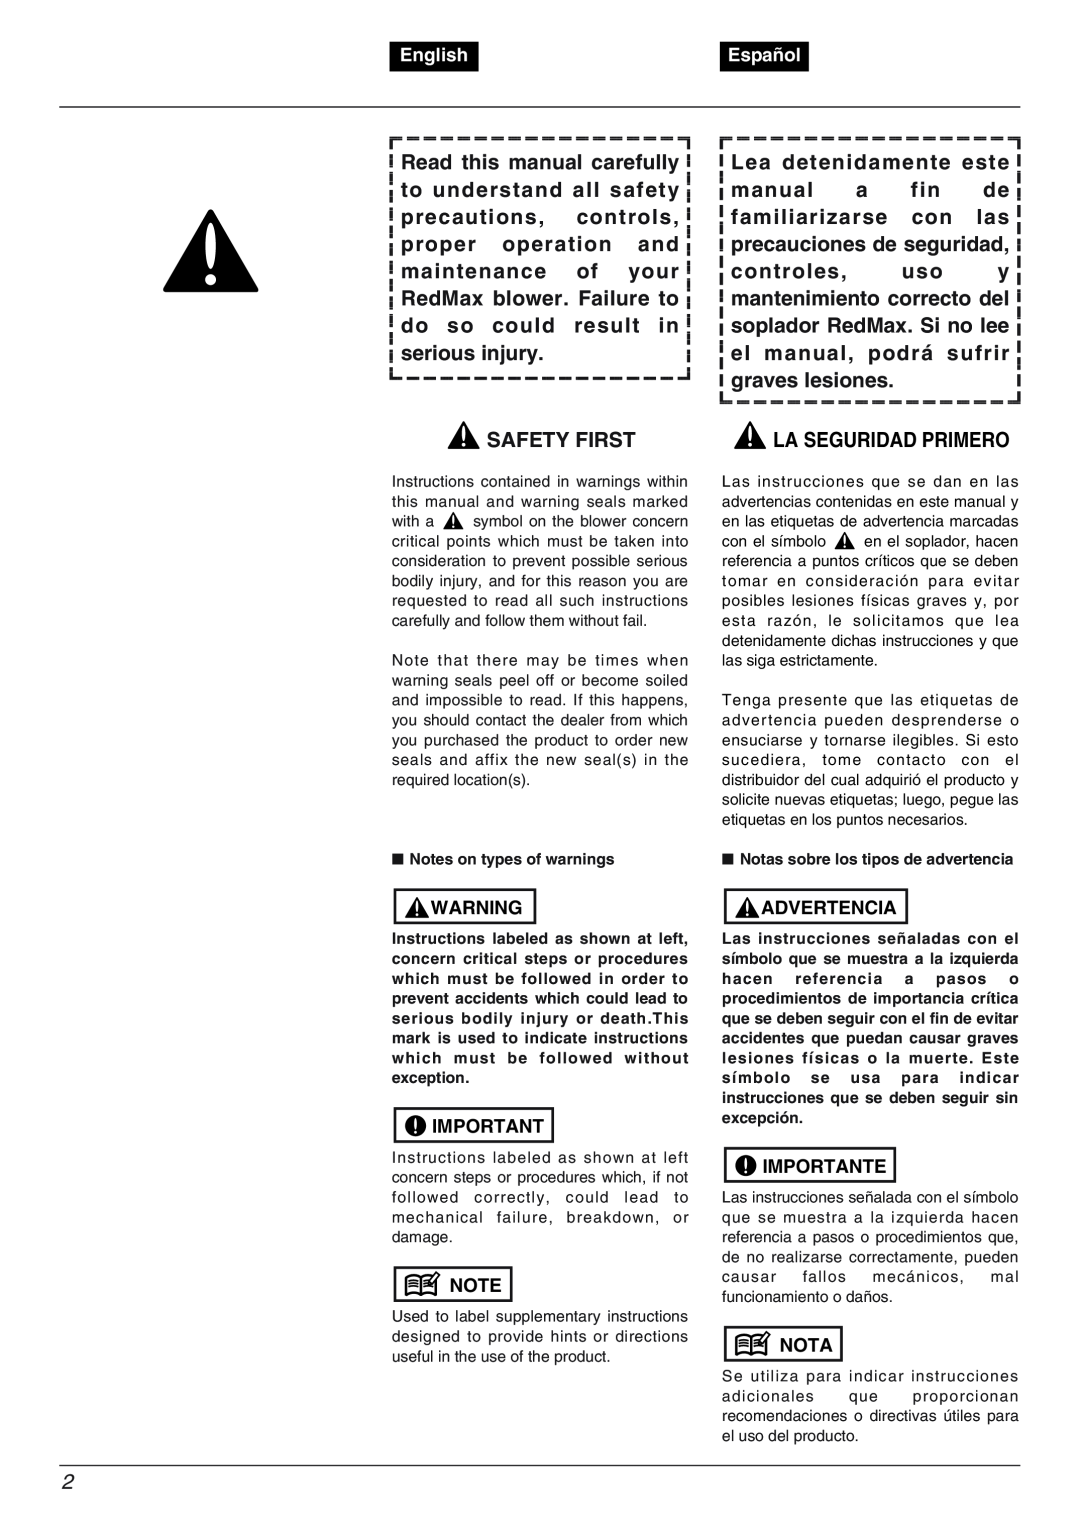 RedMax EBZ5000 Safety First, Lea detenidamente este, La Seguridad Primero, English, Español, Advertencia, Importante, Nota 